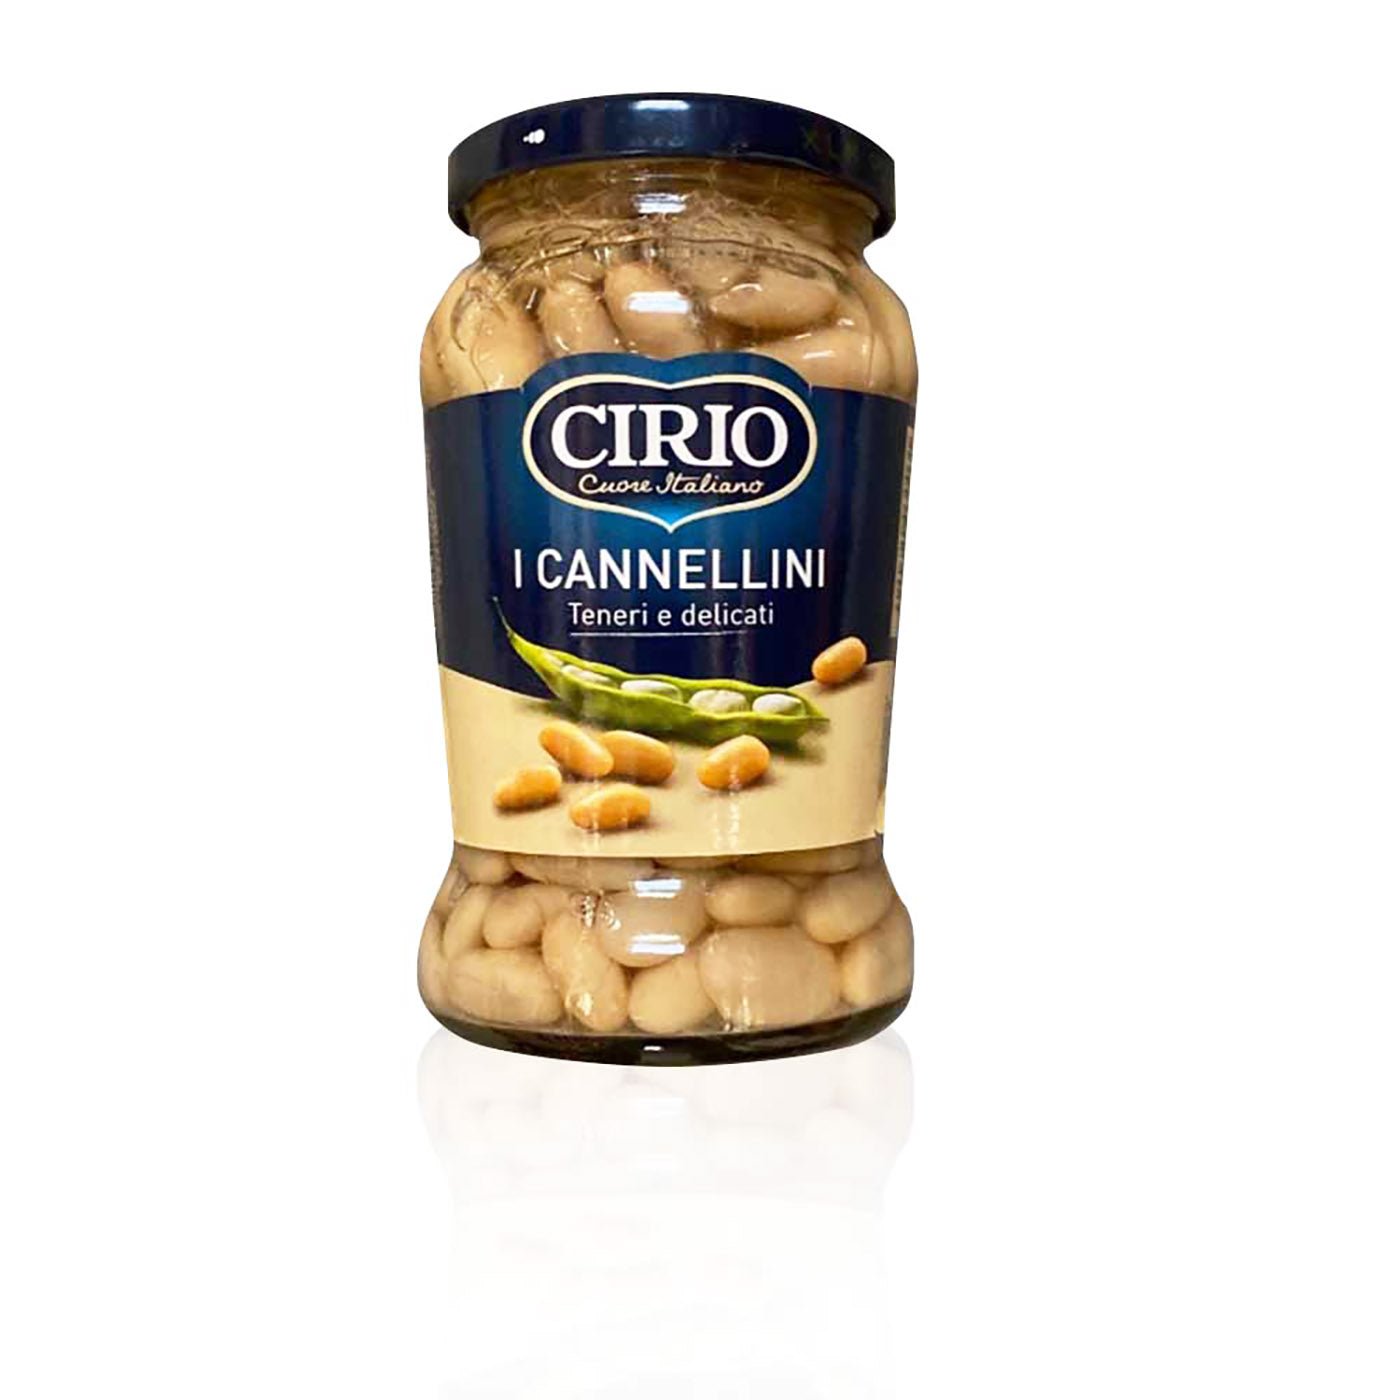 CIRIO - I Cannellini - 0,37kg - italienisch-einkaufen.de